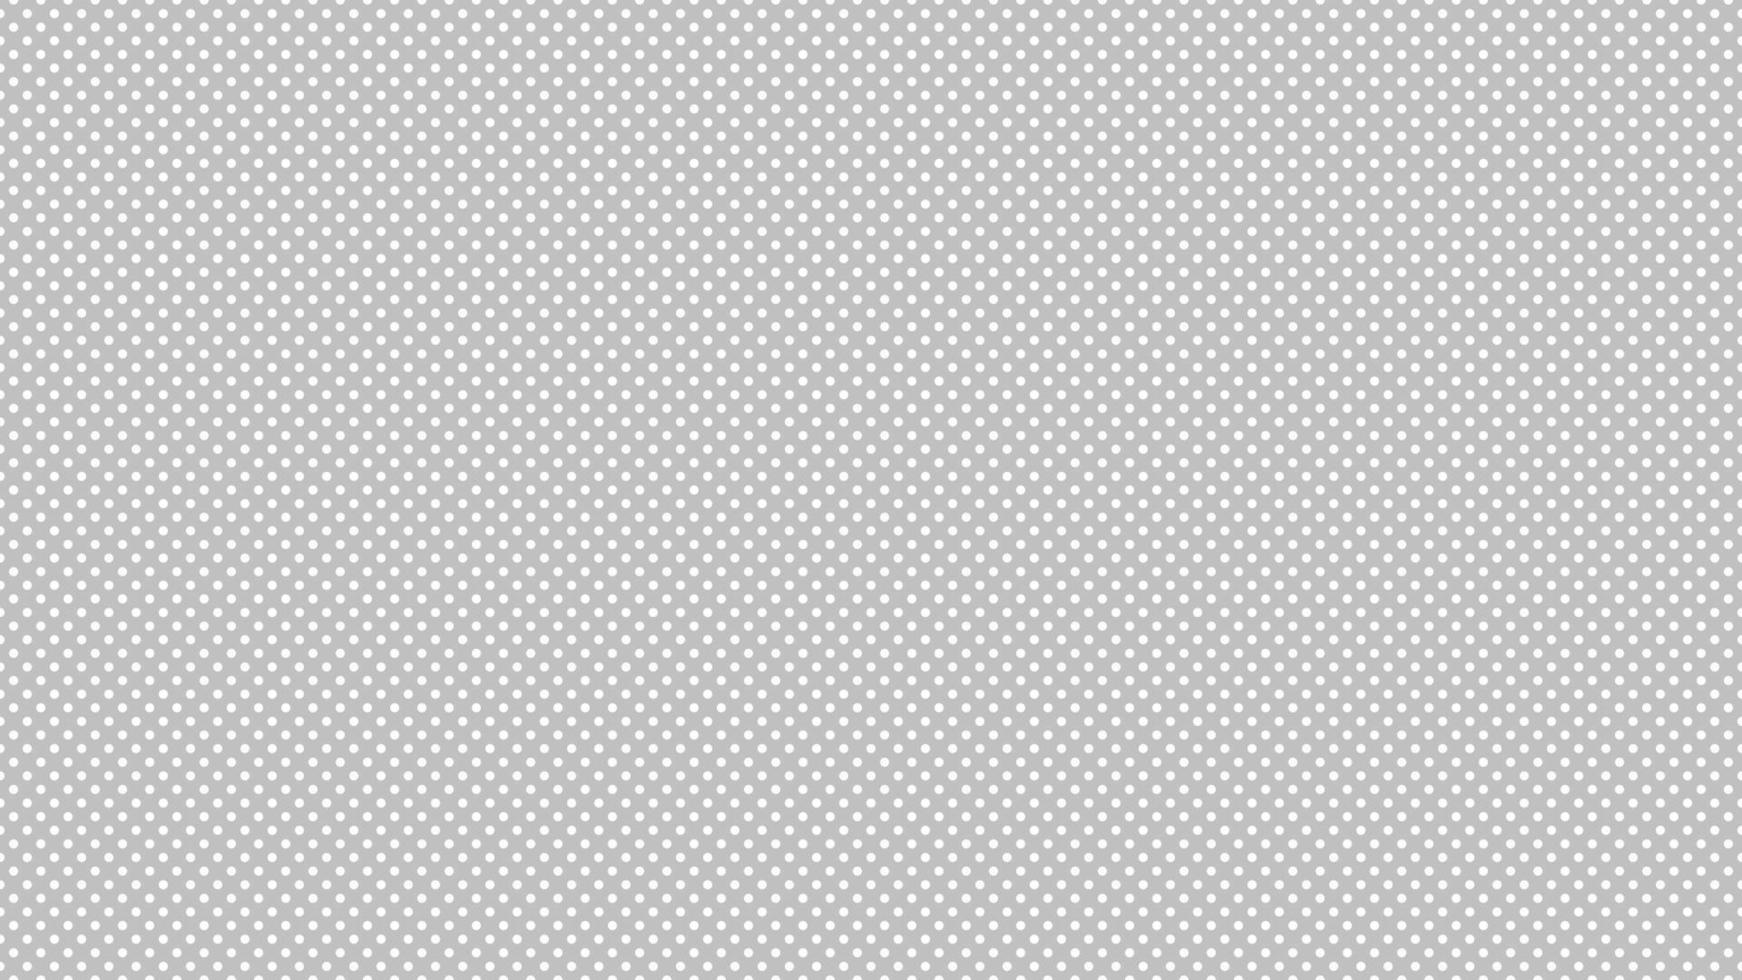 Weiß Farbe Polka Punkte Über Silber grau Hintergrund vektor